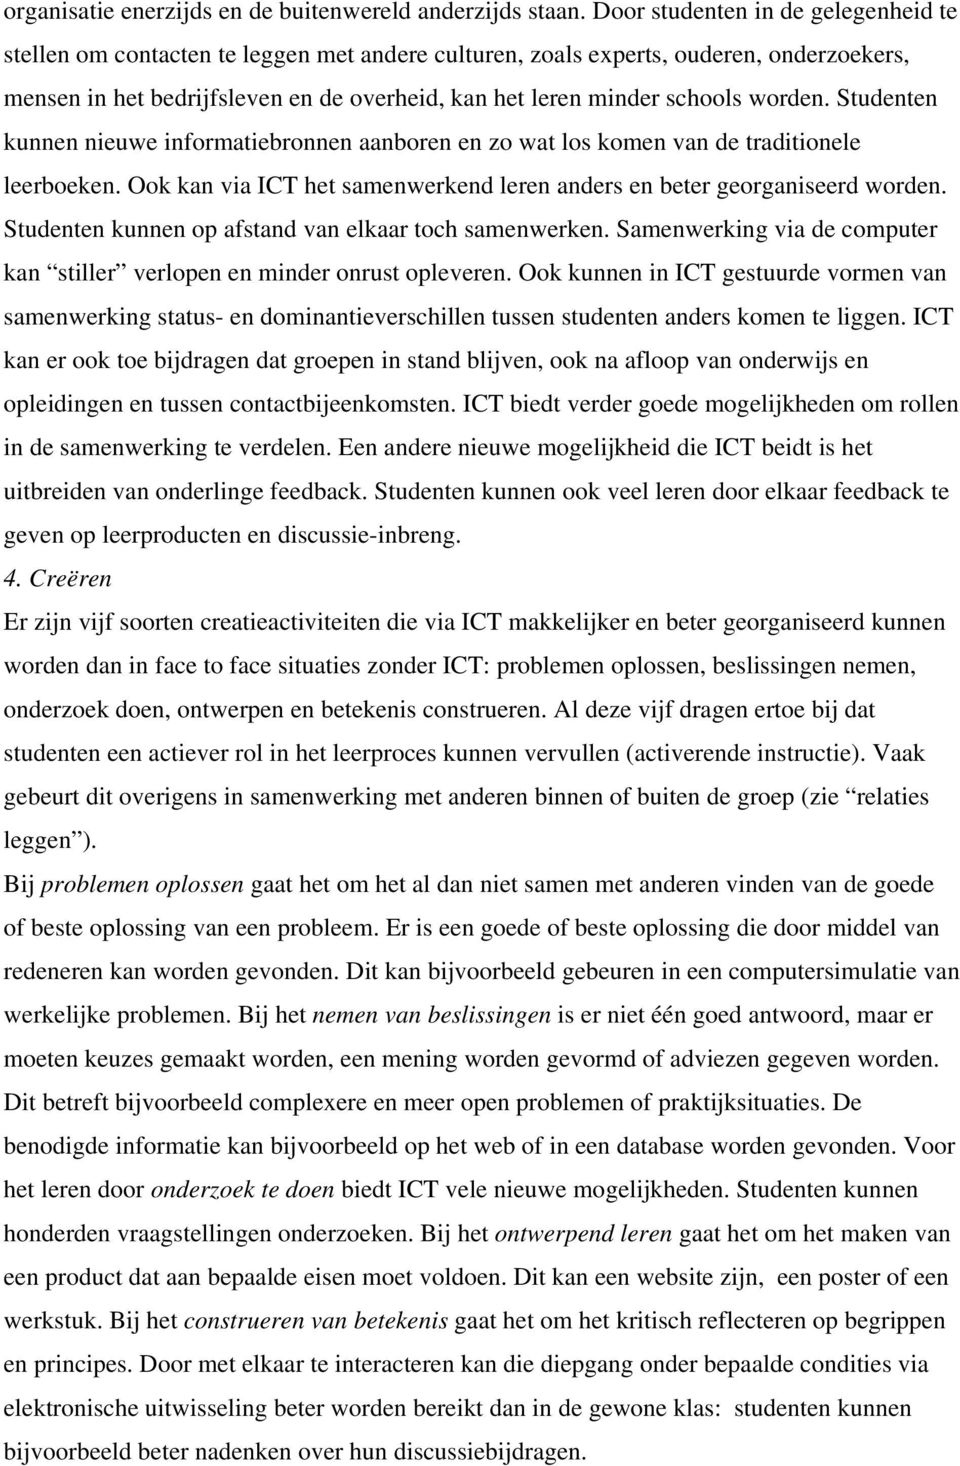 worden. Studenten kunnen nieuwe informatiebronnen aanboren en zo wat los komen van de traditionele leerboeken. Ook kan via ICT het samenwerkend leren anders en beter georganiseerd worden.